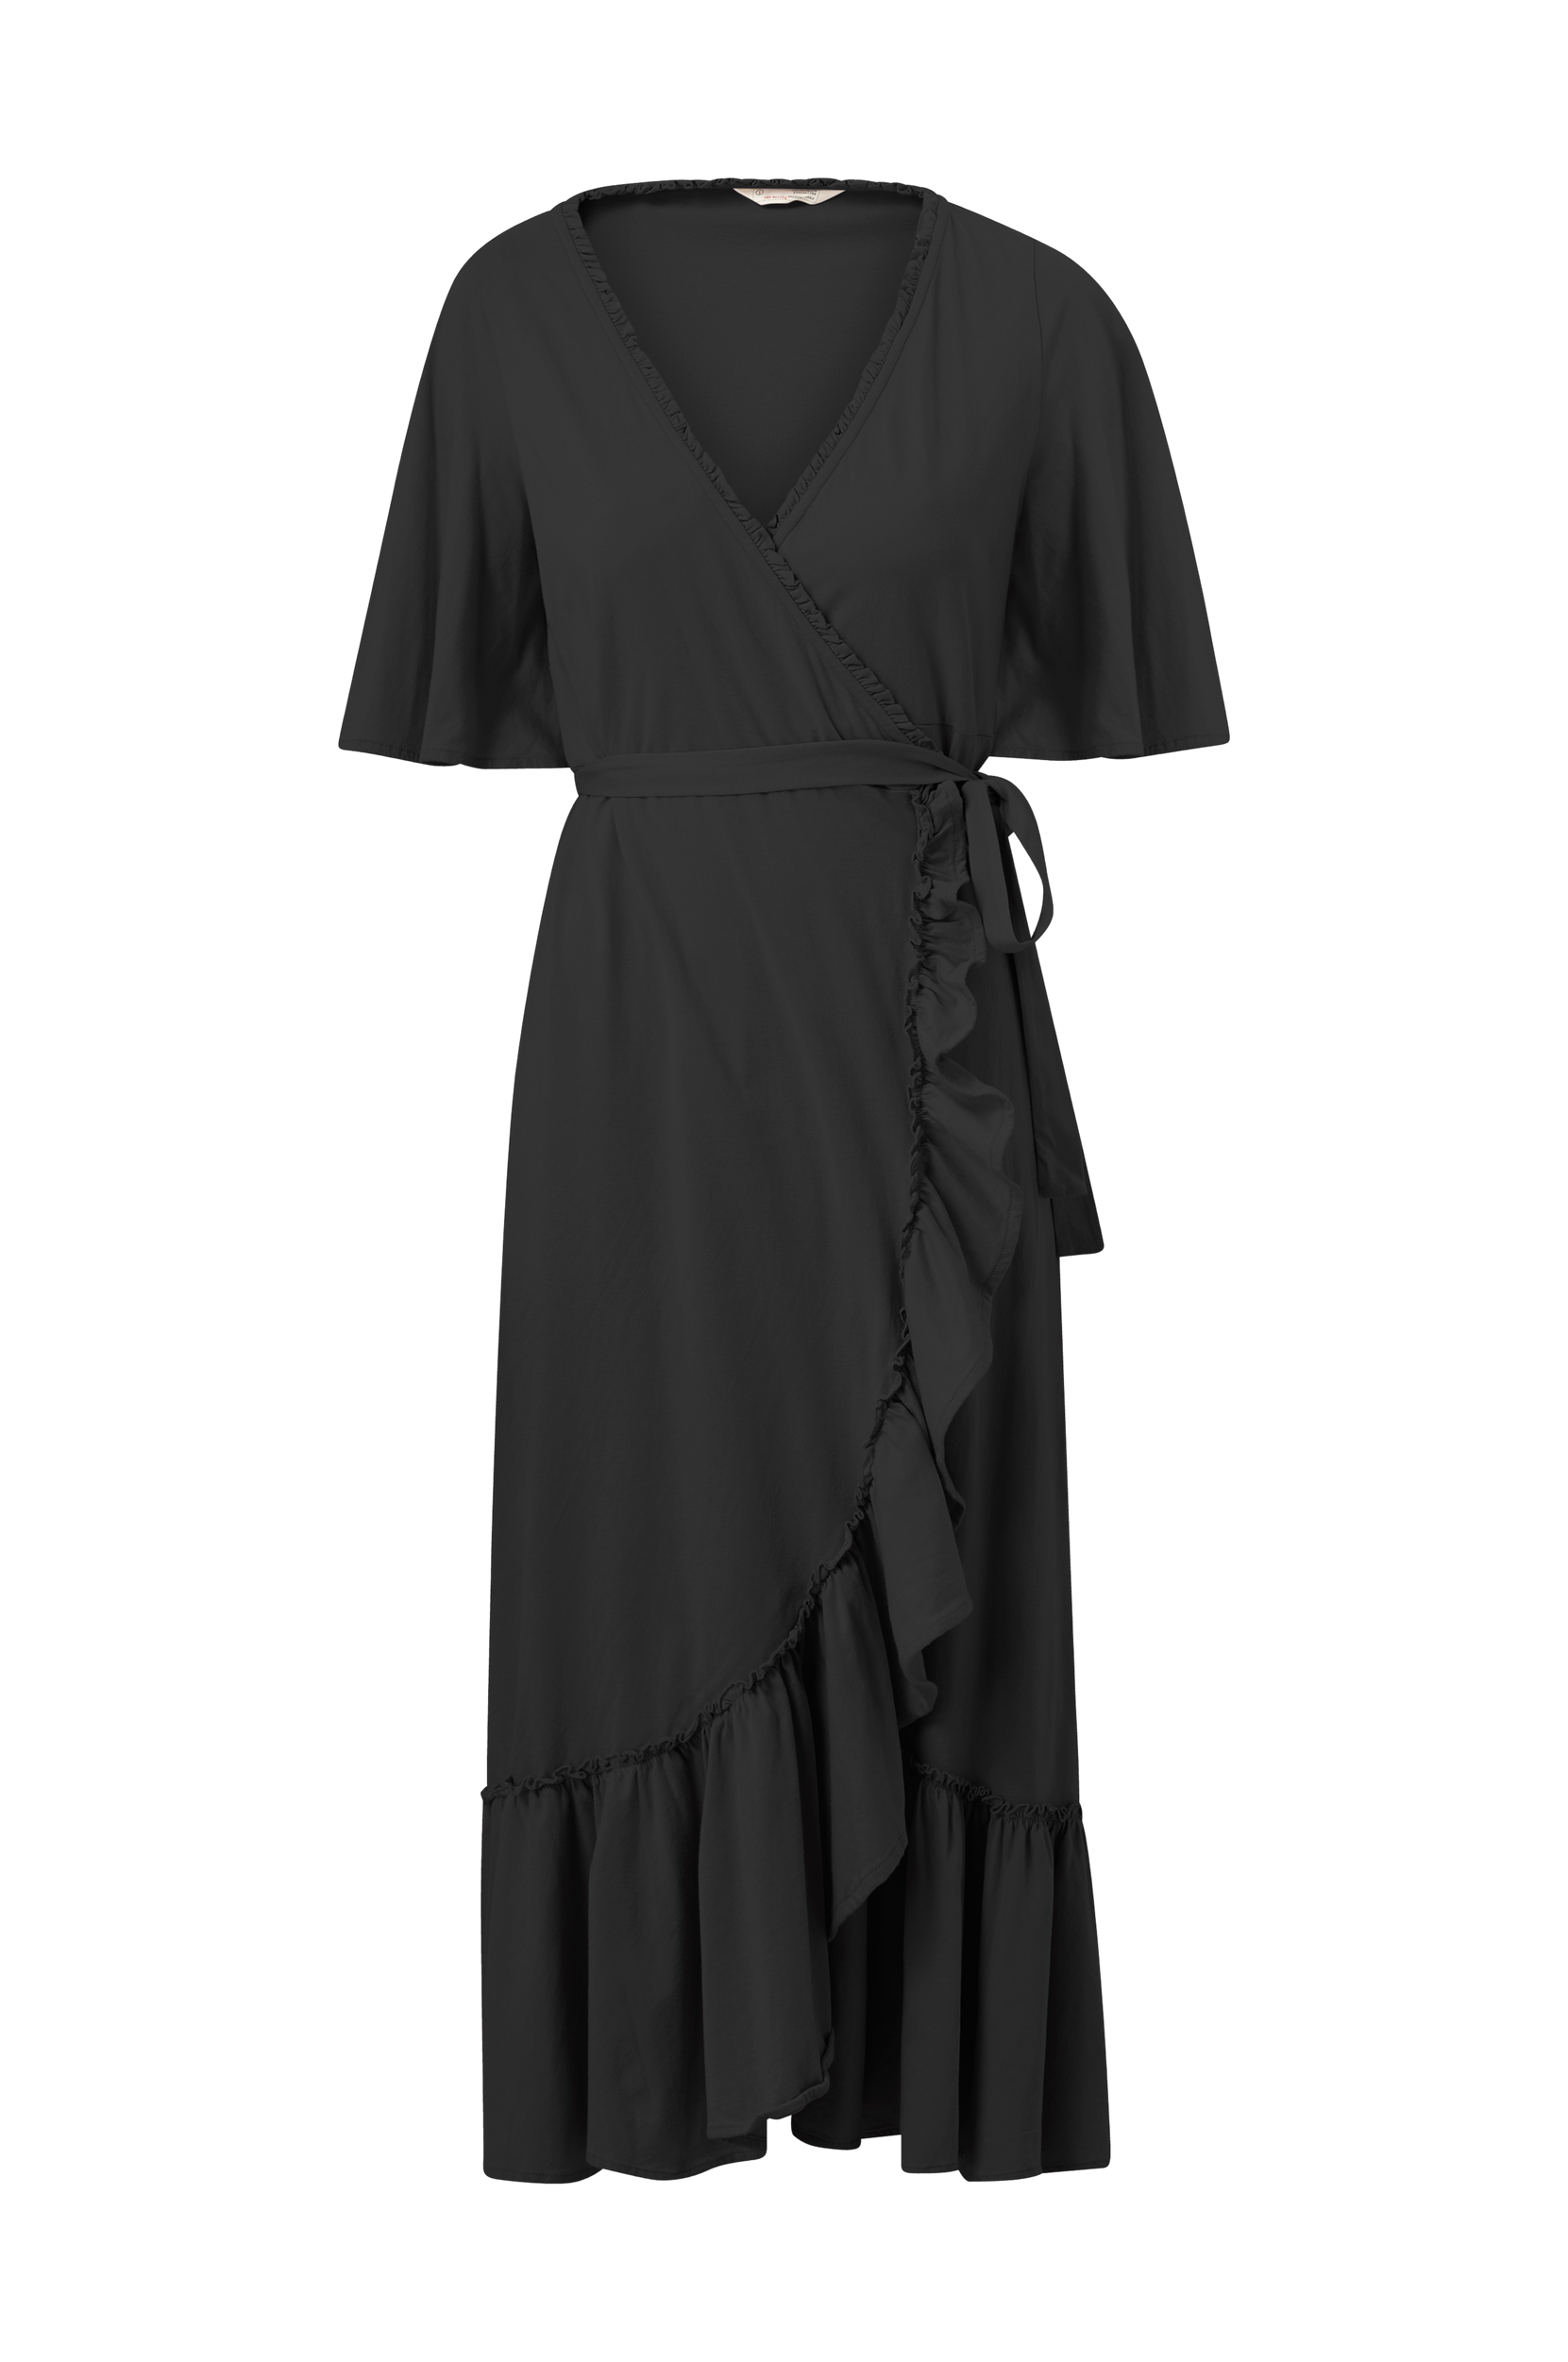 Molly - Slå-om kjole Gracie Dress - Sort - 36 - Kjoler - Tøj til kvinder (30653068)